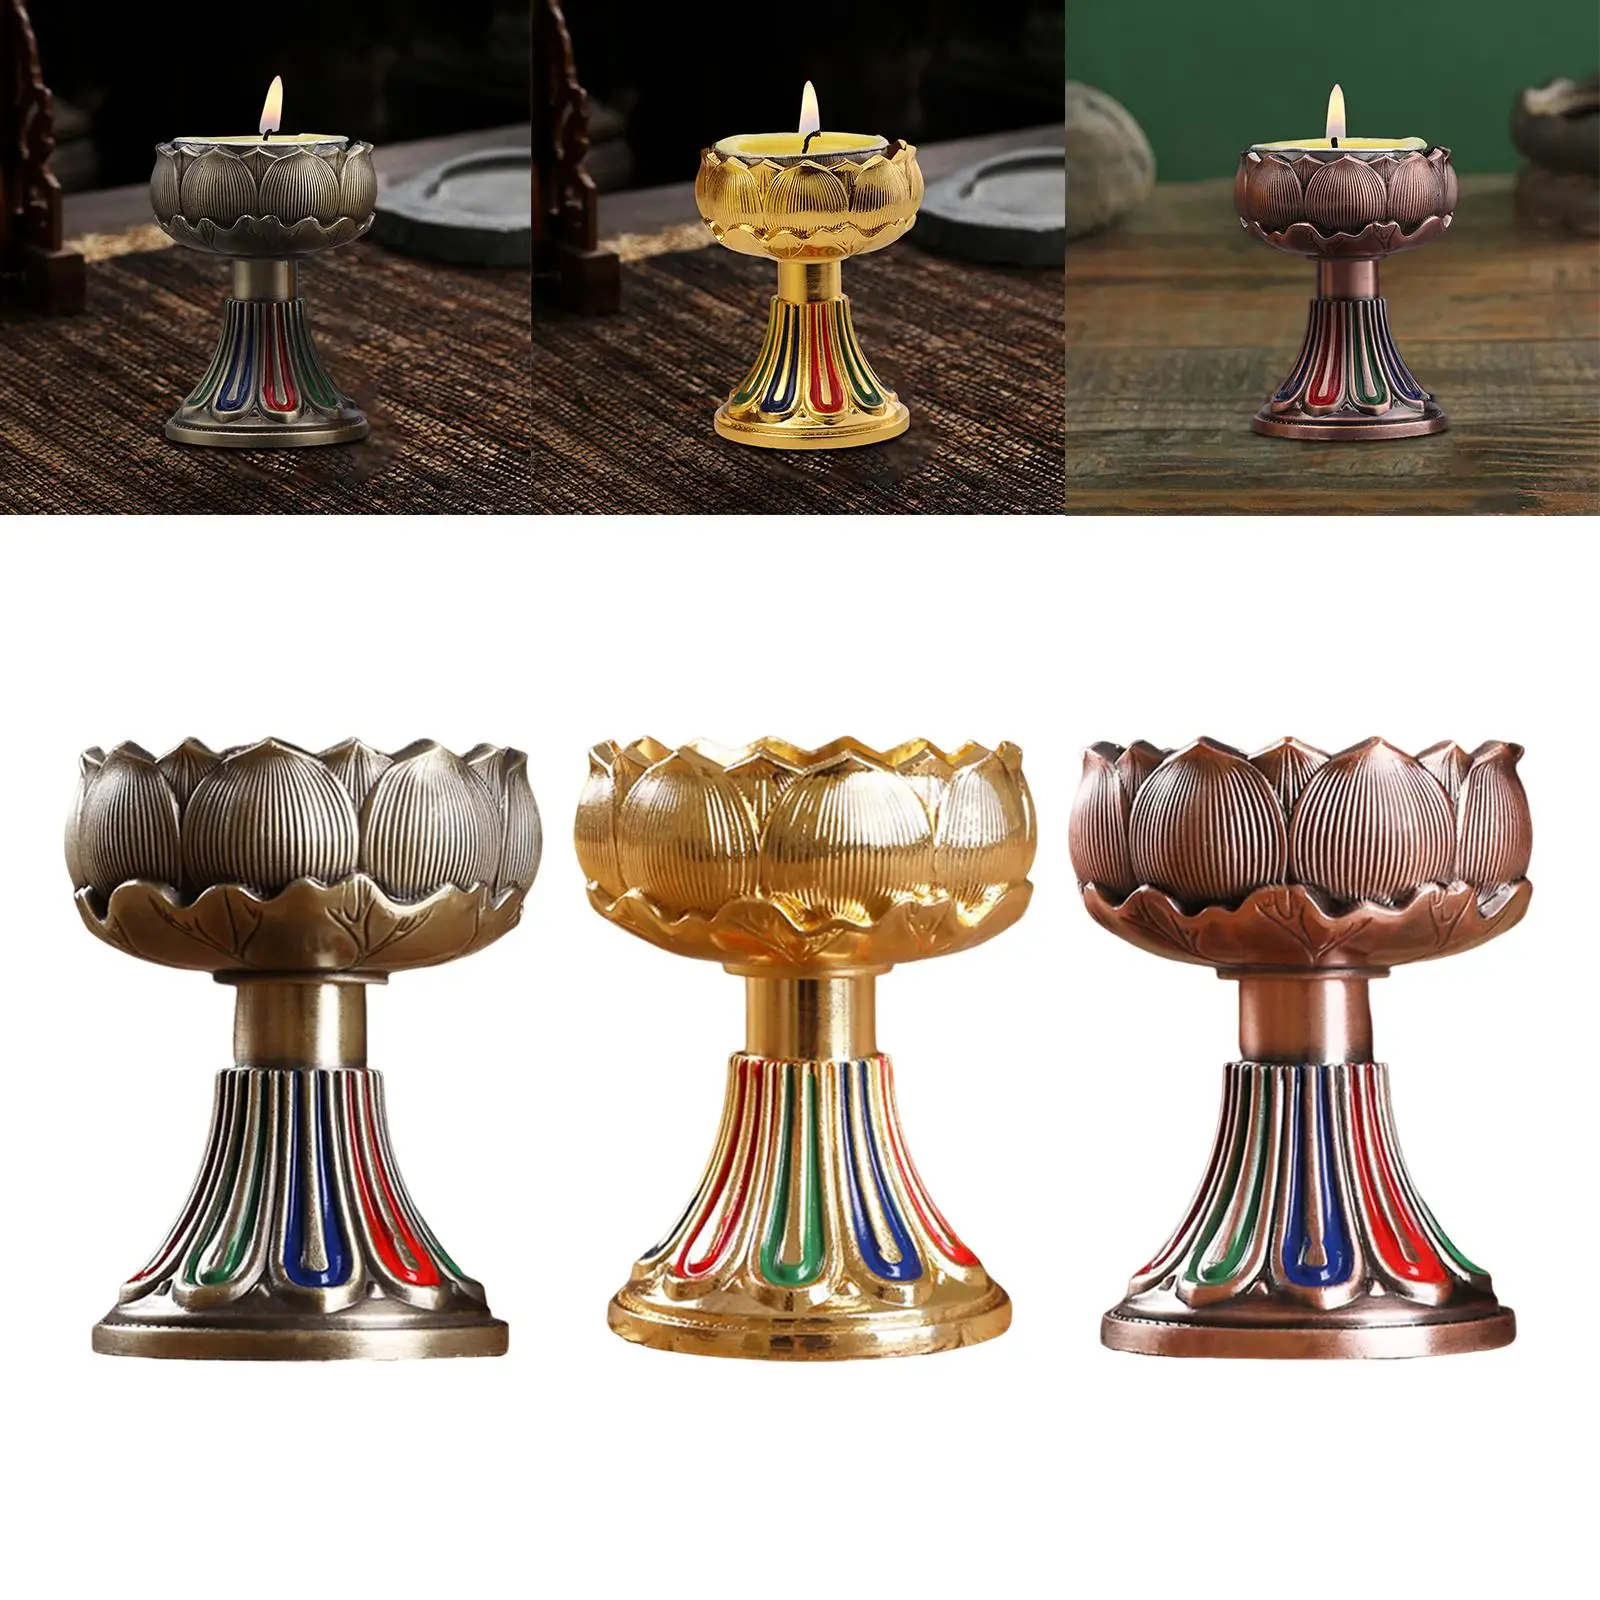 Lotus Ghee Lamp Holder Oil Lamp Holder Tea Light Holder Ornaments Craft Butter Lamp Holder for Temples Tibetan Altar Supplies